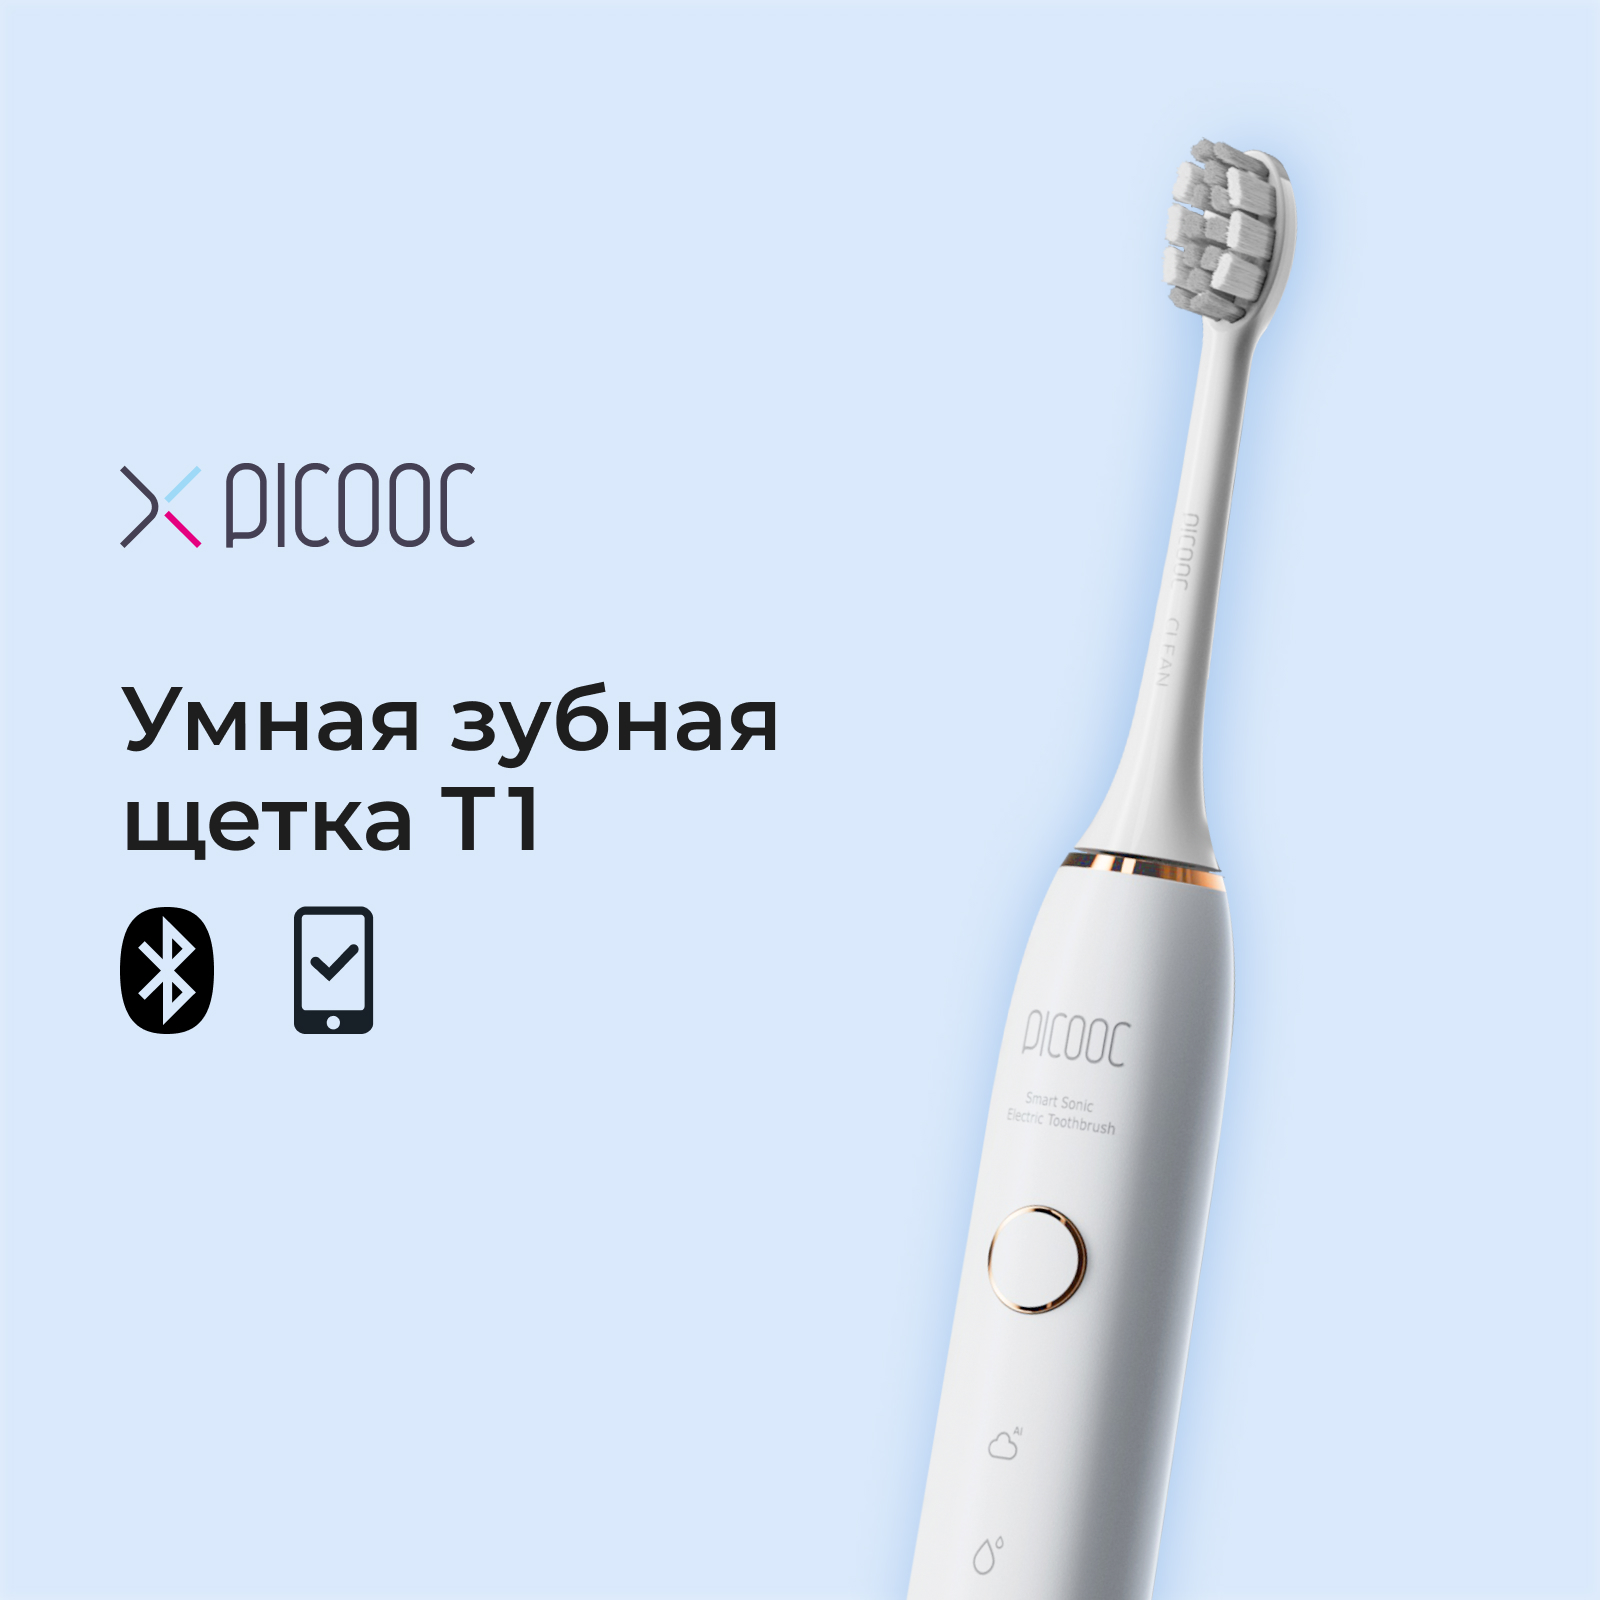 Электрическая зубная щетка Picooc T1 белая электрическая зубная щетка picooc t1 белая